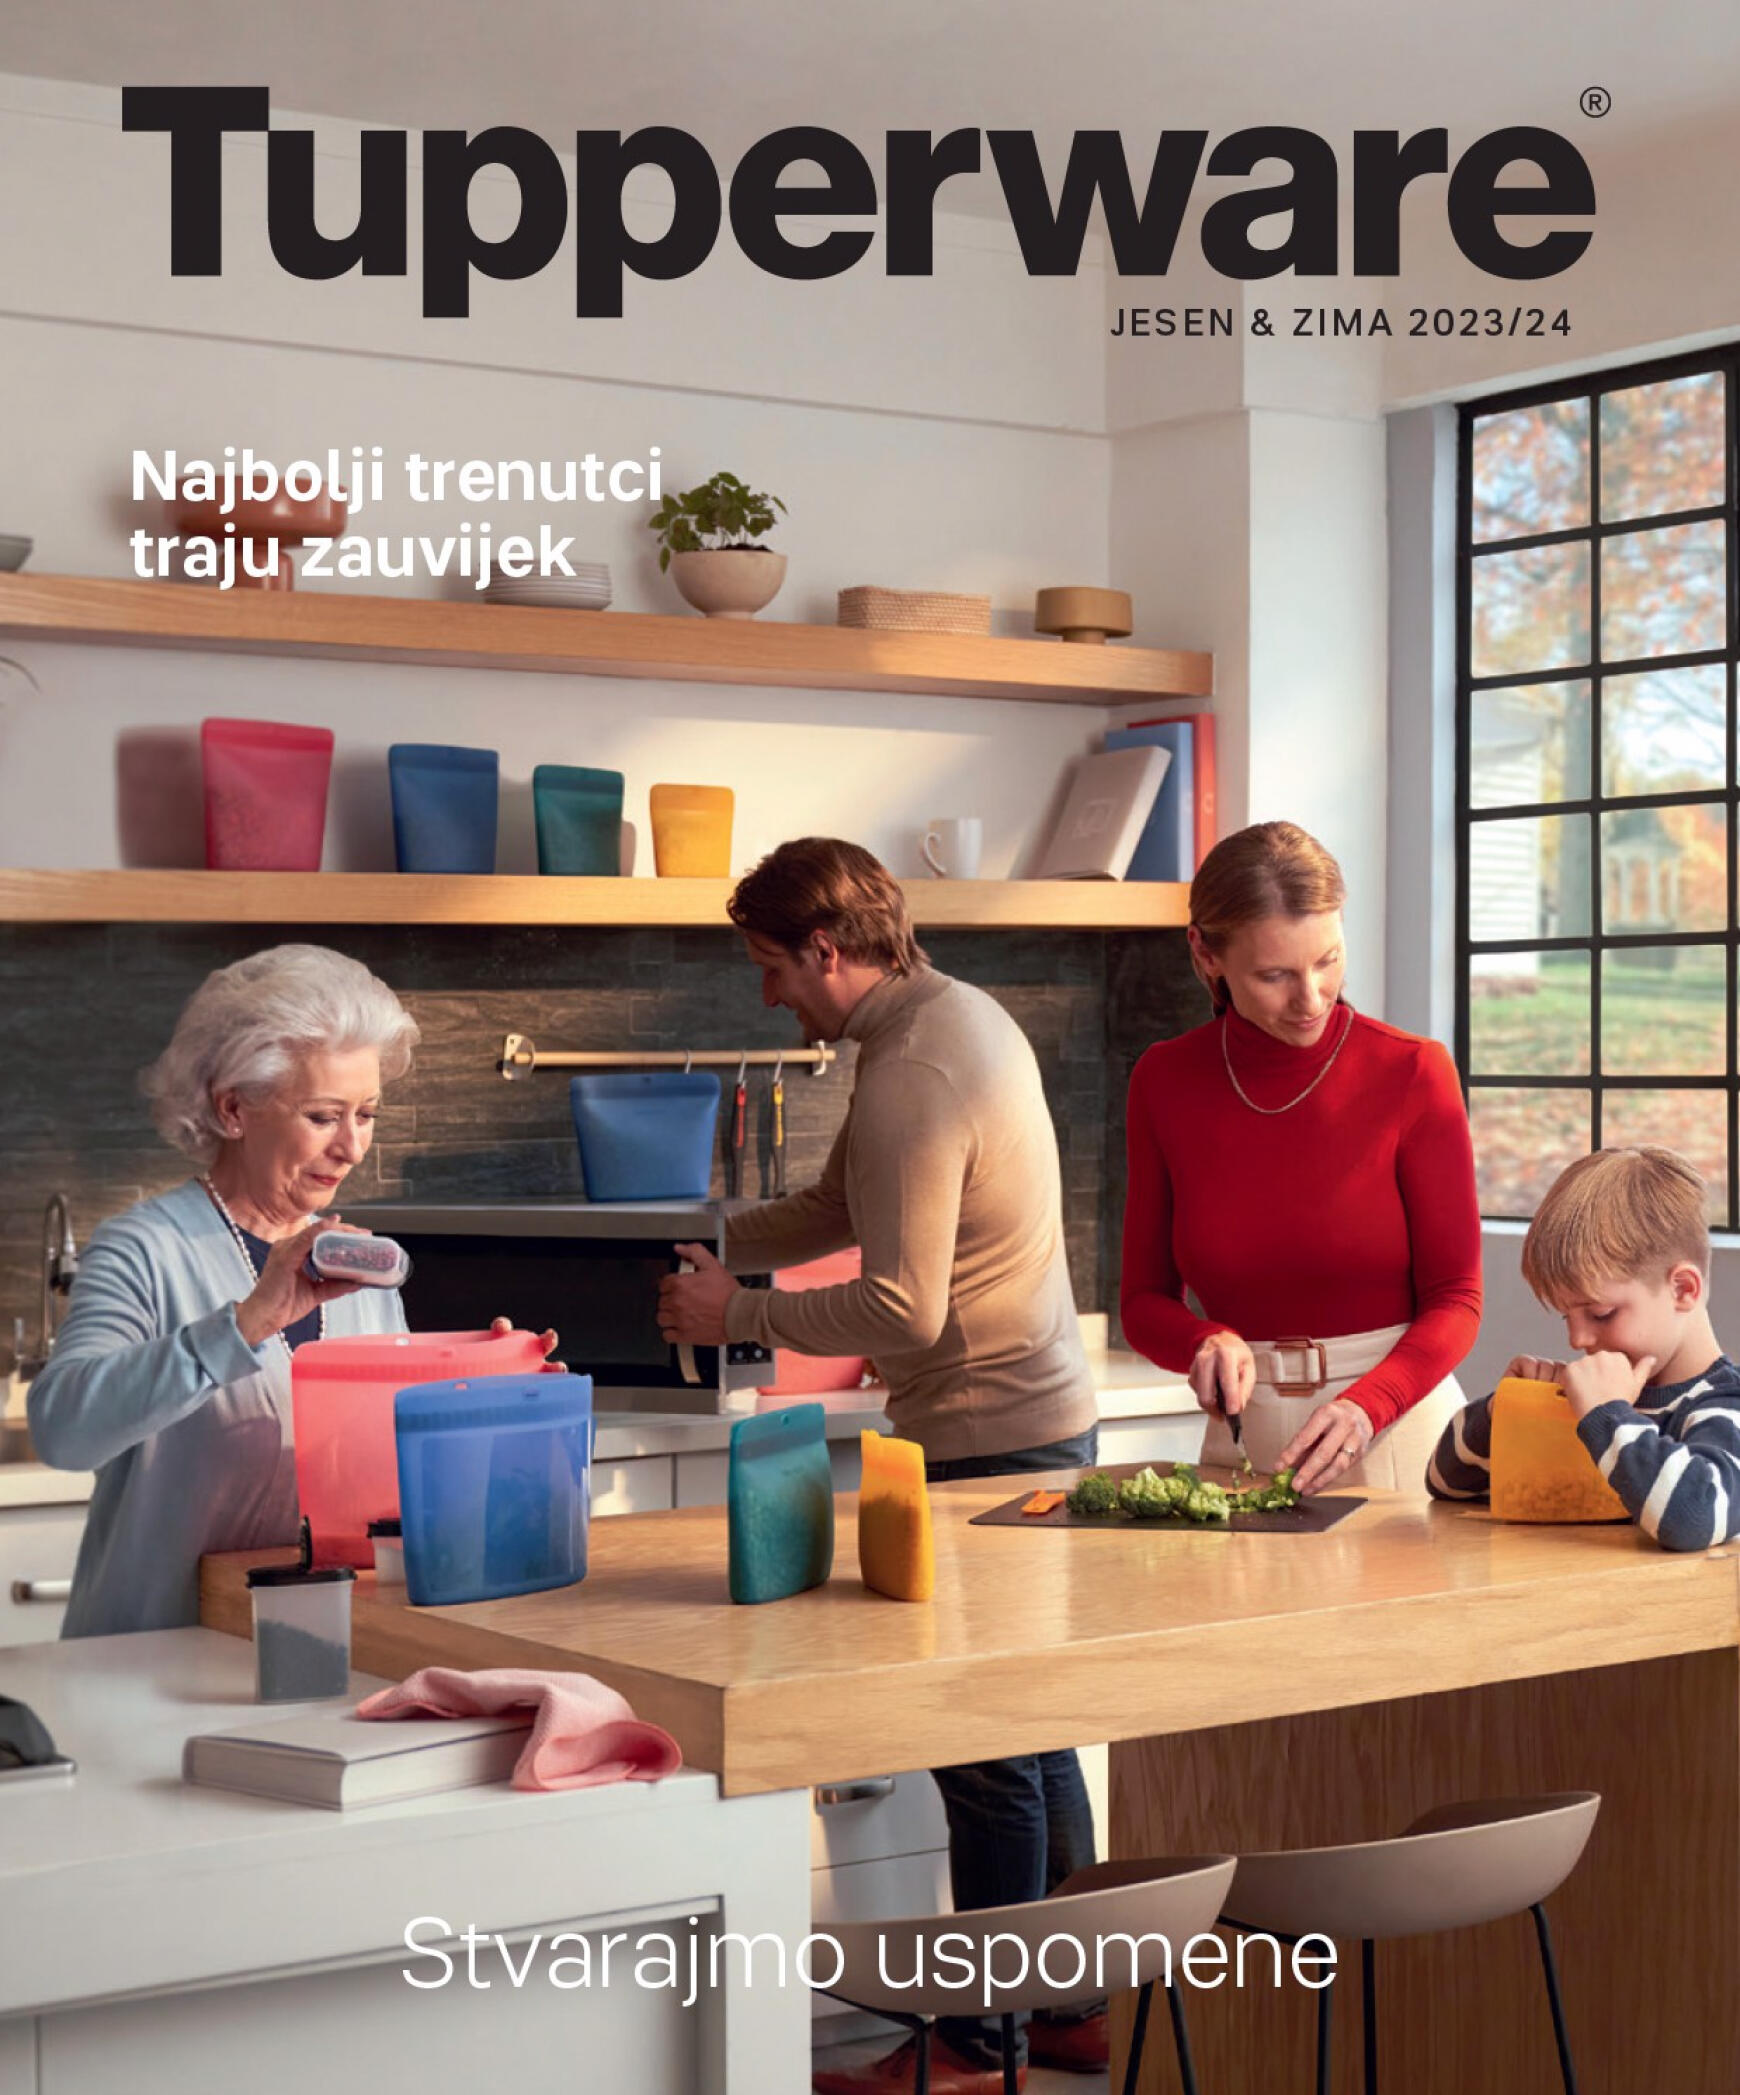 tupperware - Tupperware - JESEN & ZIMA 2023/24